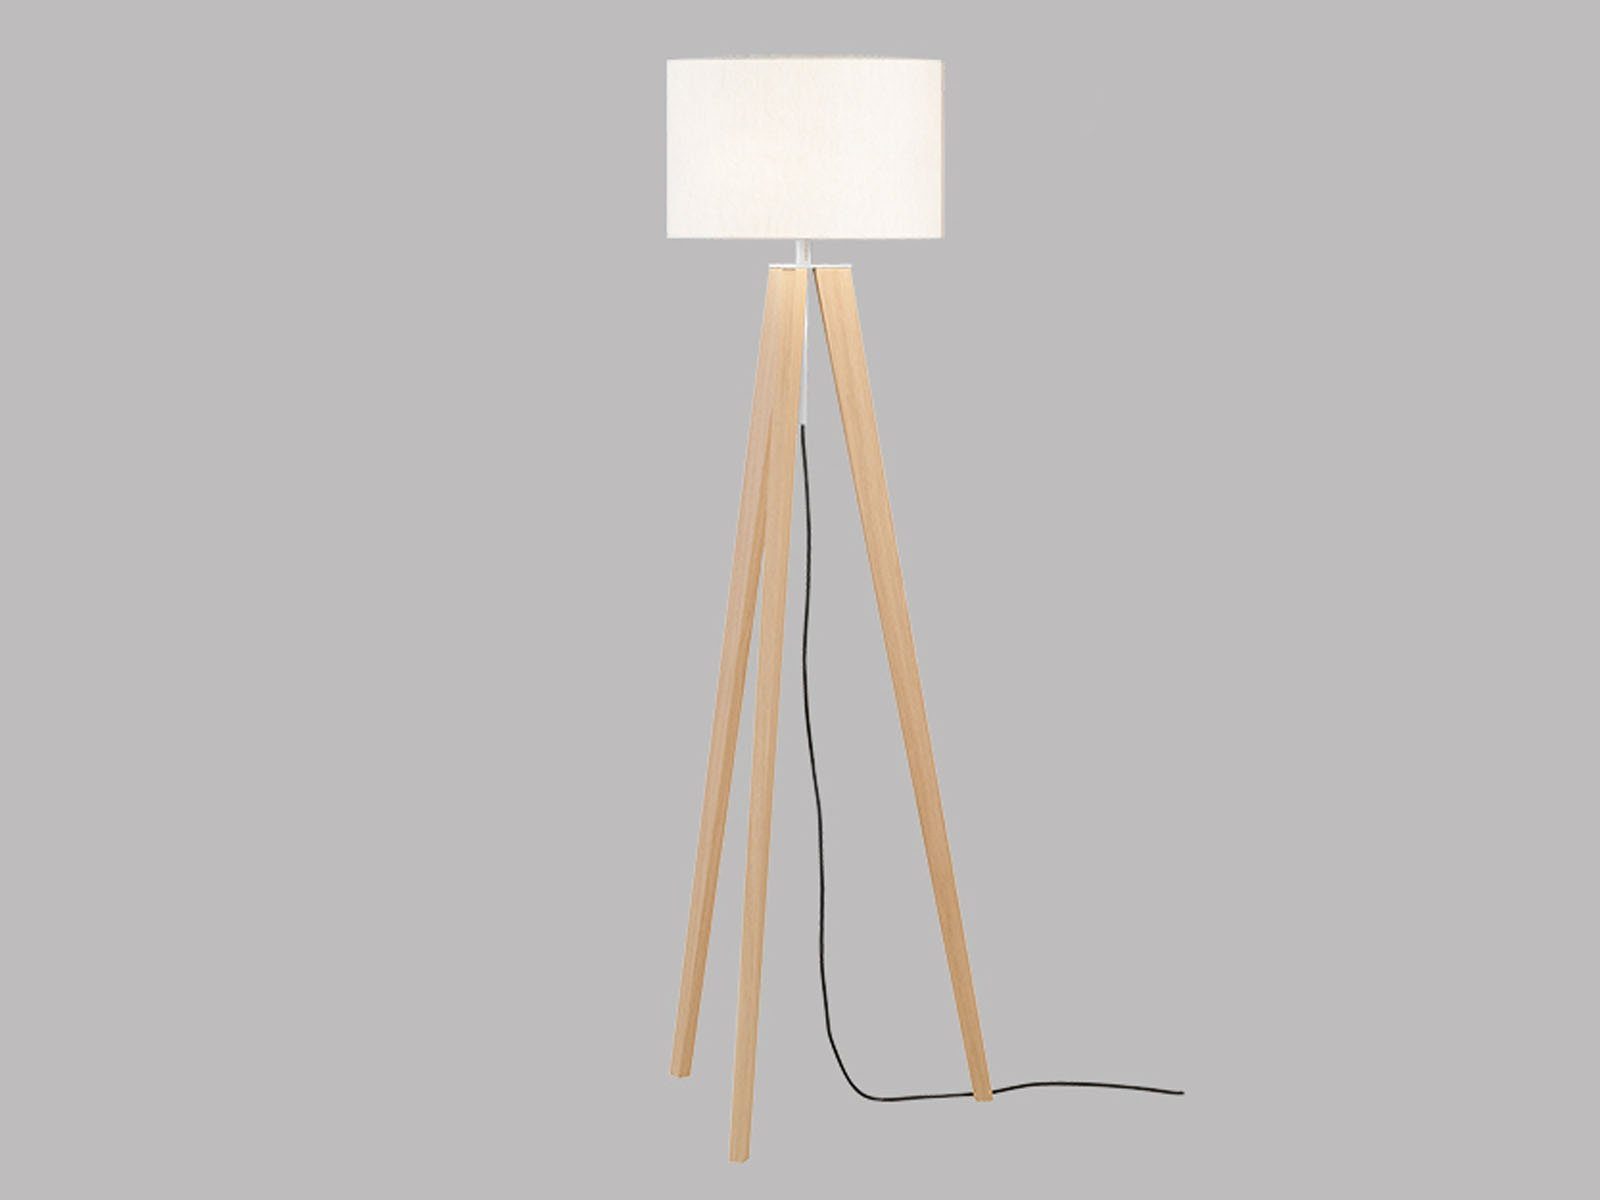 höhenverstellbar, dimmbar Warmweiß, Stehlampe, skandinavisch 140-164cm, Natur-Weiß wechselbar, Leinen-Schirm meineWunschleuchte LED Weiß, Tripod Holz-Lampe LED